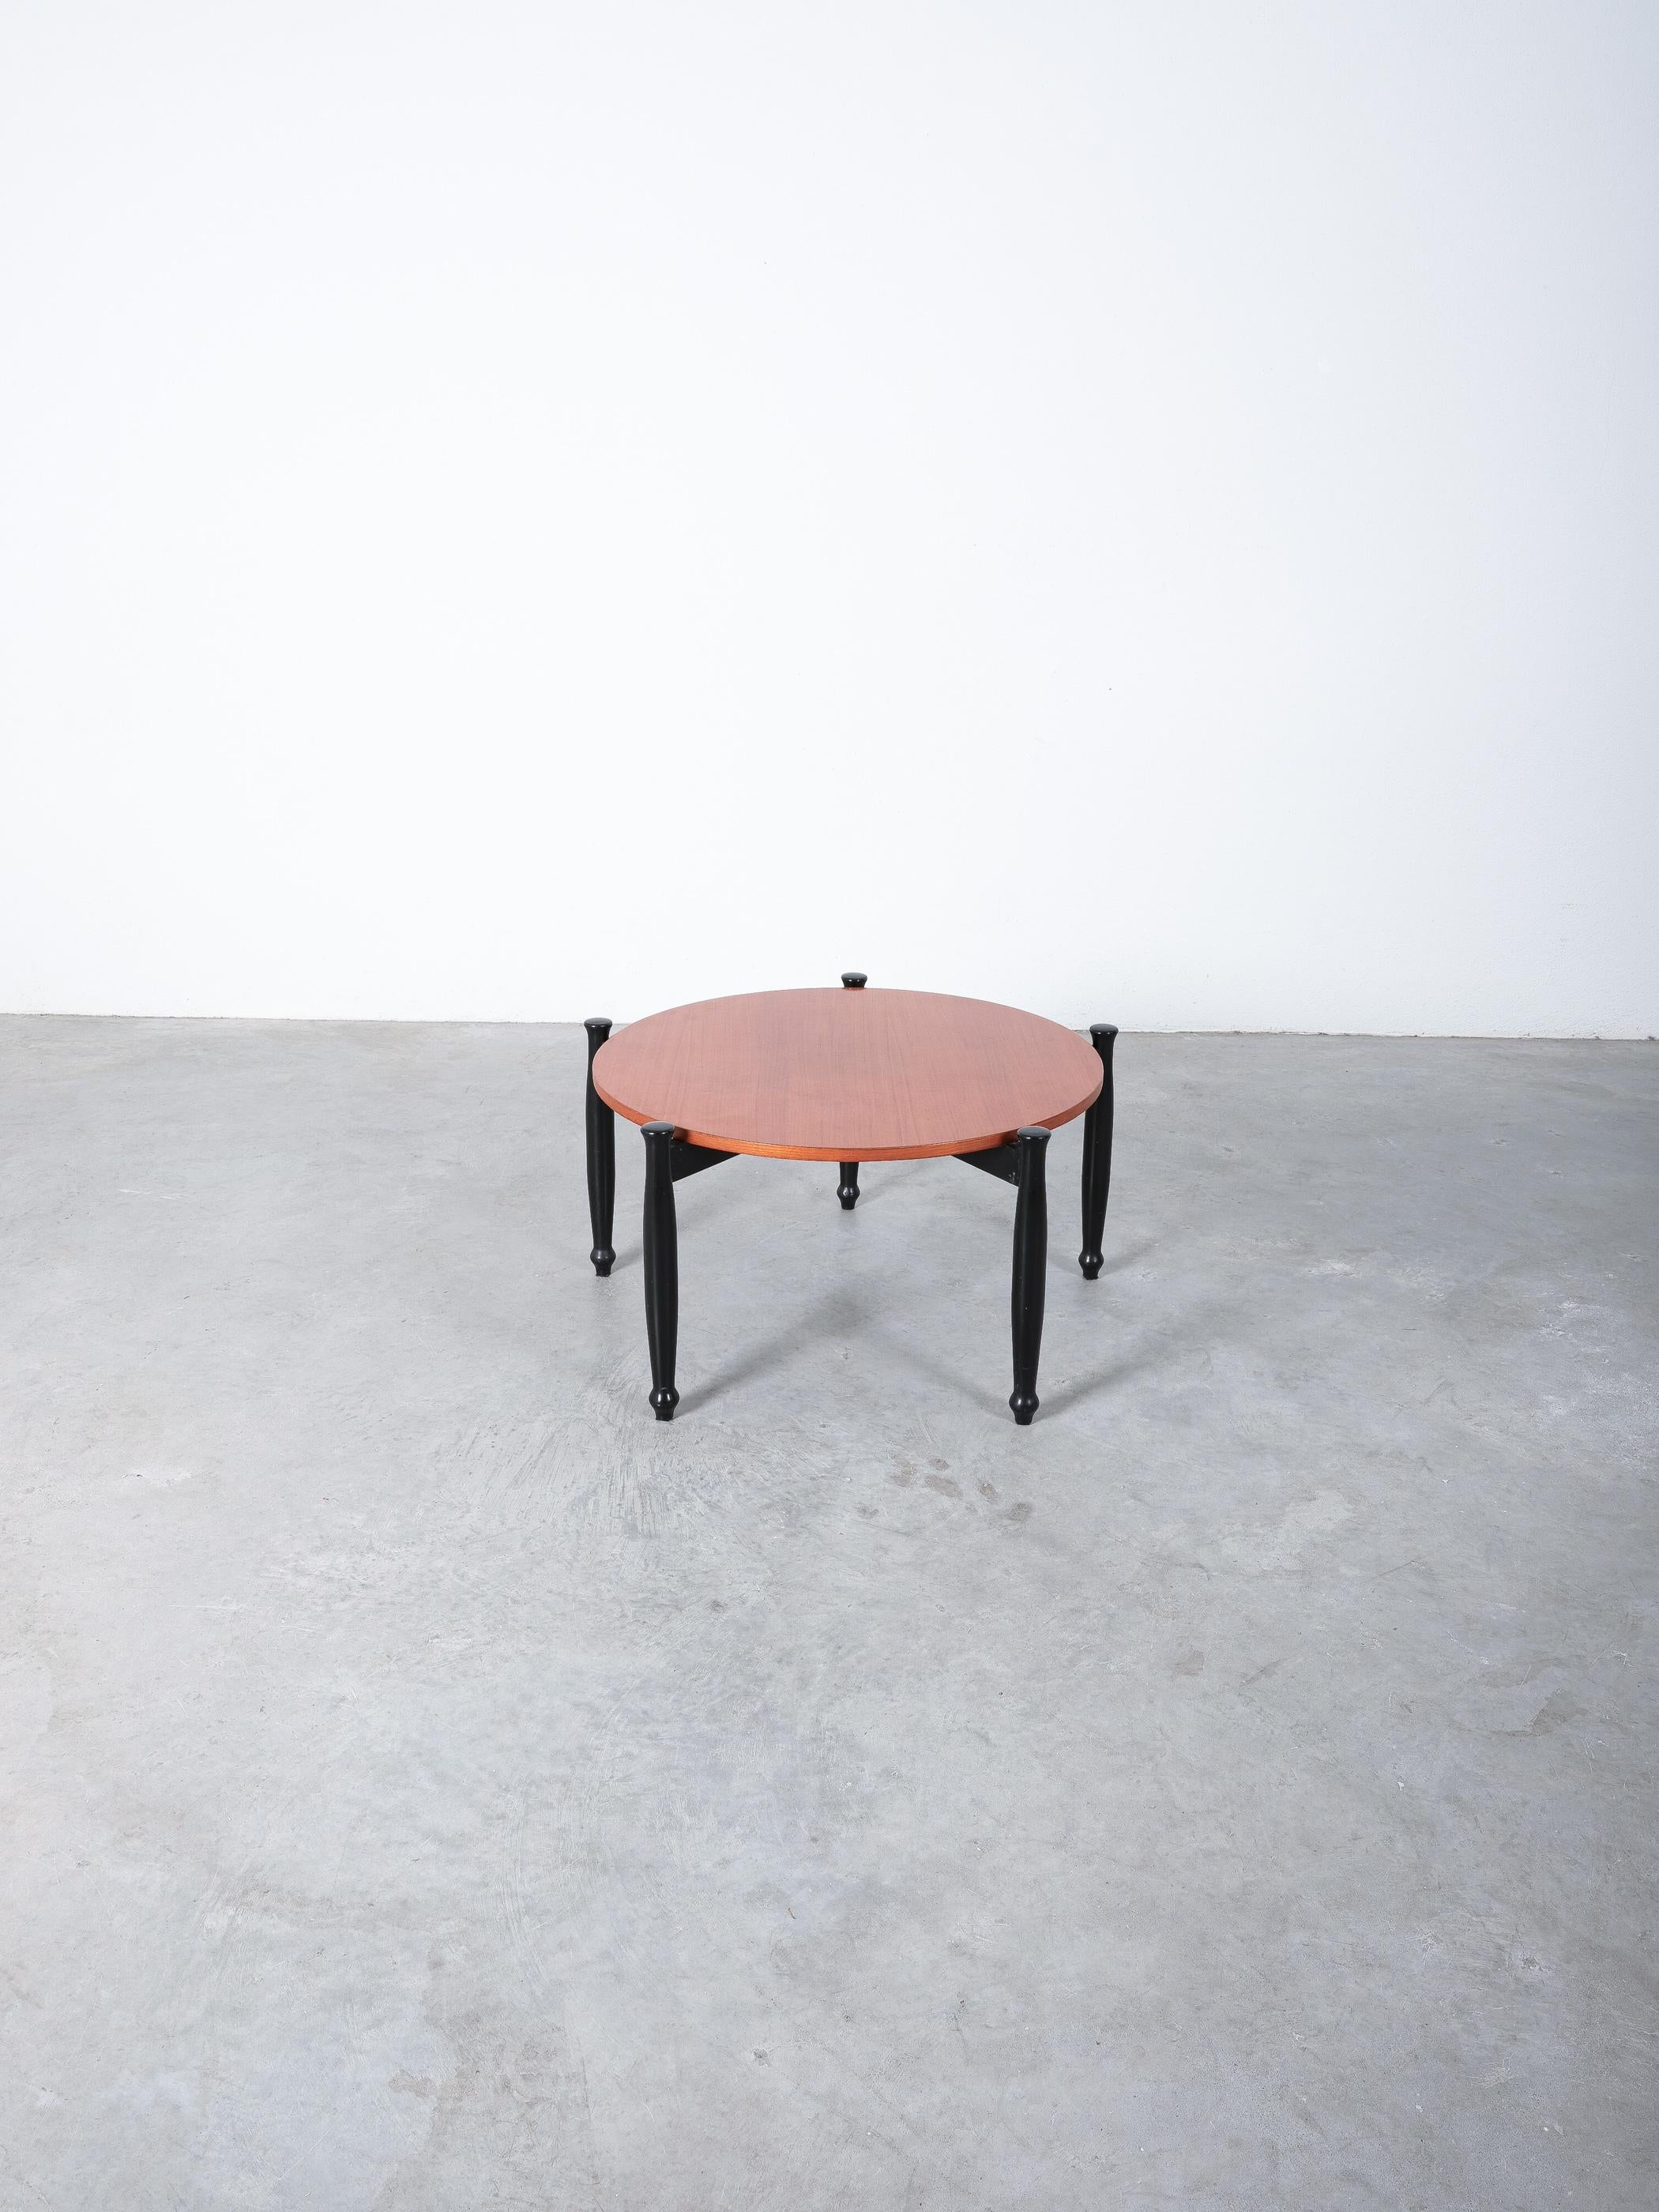 Tisch aus Wengeholz mit, Frankreich, um 1960.

Tisch aus der Mitte des Jahrhunderts aus Nussbaum und Teakholz. Er besteht aus einer kreuzförmigen Basis mit fünf a-symmetrischen Füßen. Wunderschönes Design mit einem Durchmesser von 31